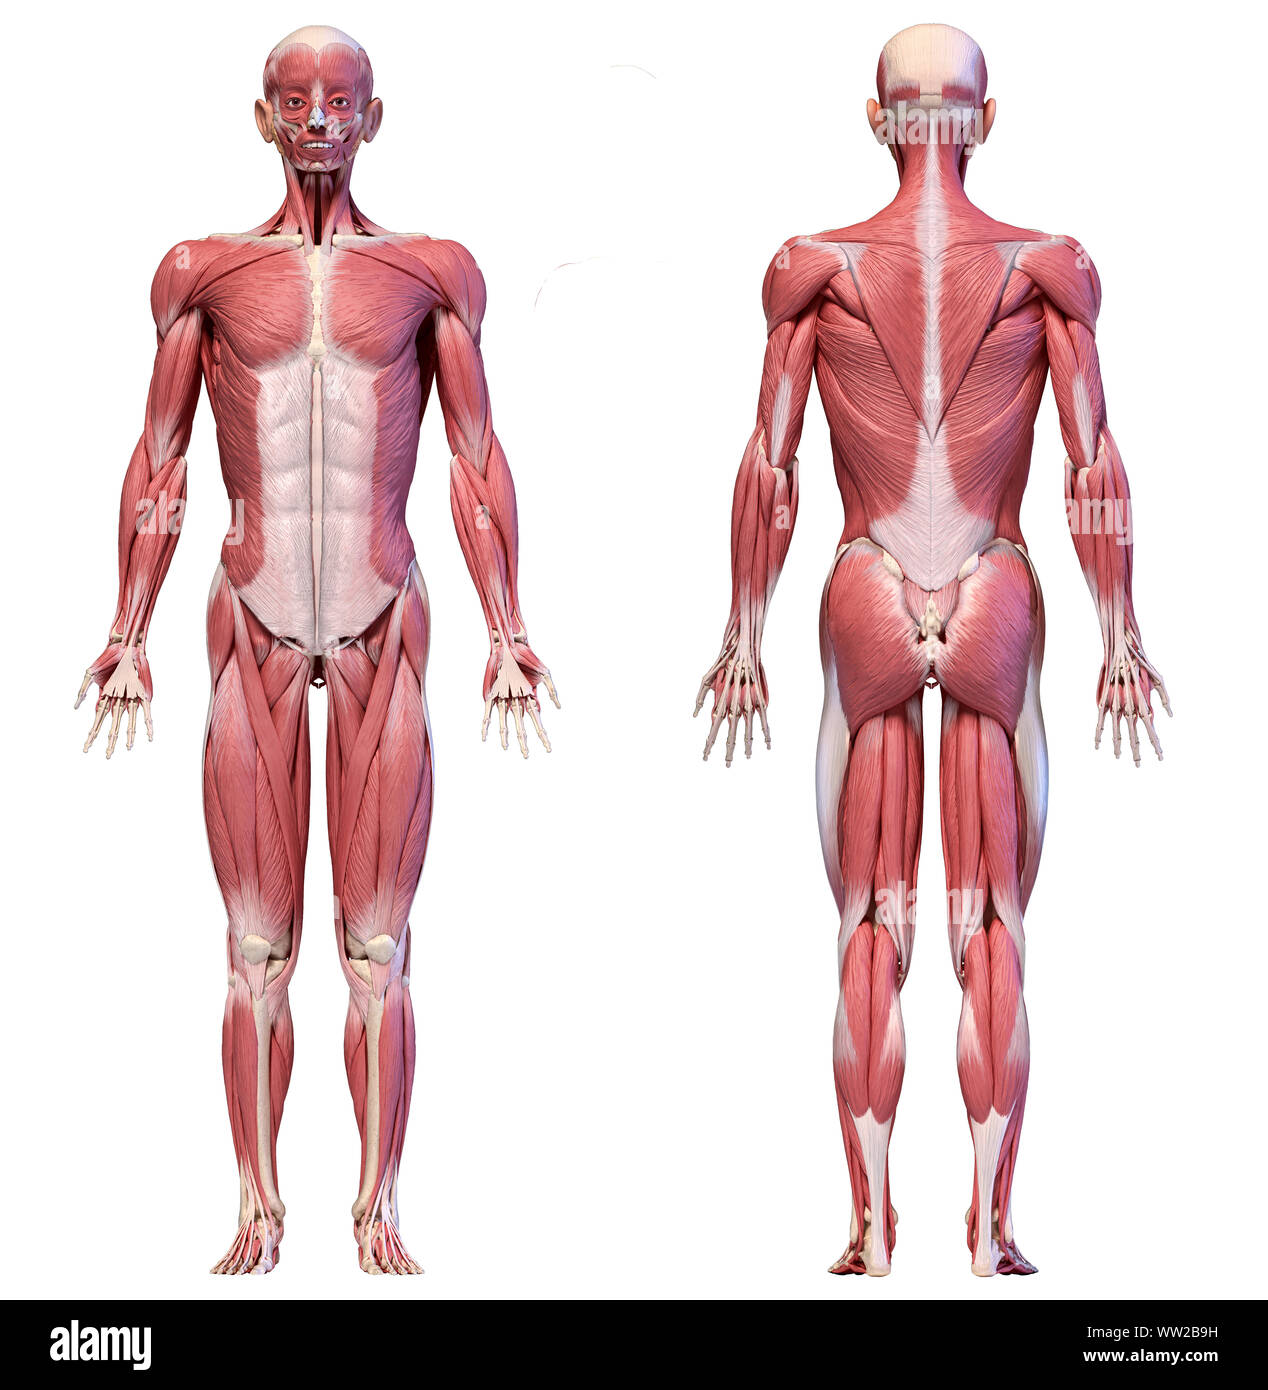 L'anatomie humaine 3d illustration, homme système musculaire corps plein, vues avant et arrière sur fond blanc. Banque D'Images